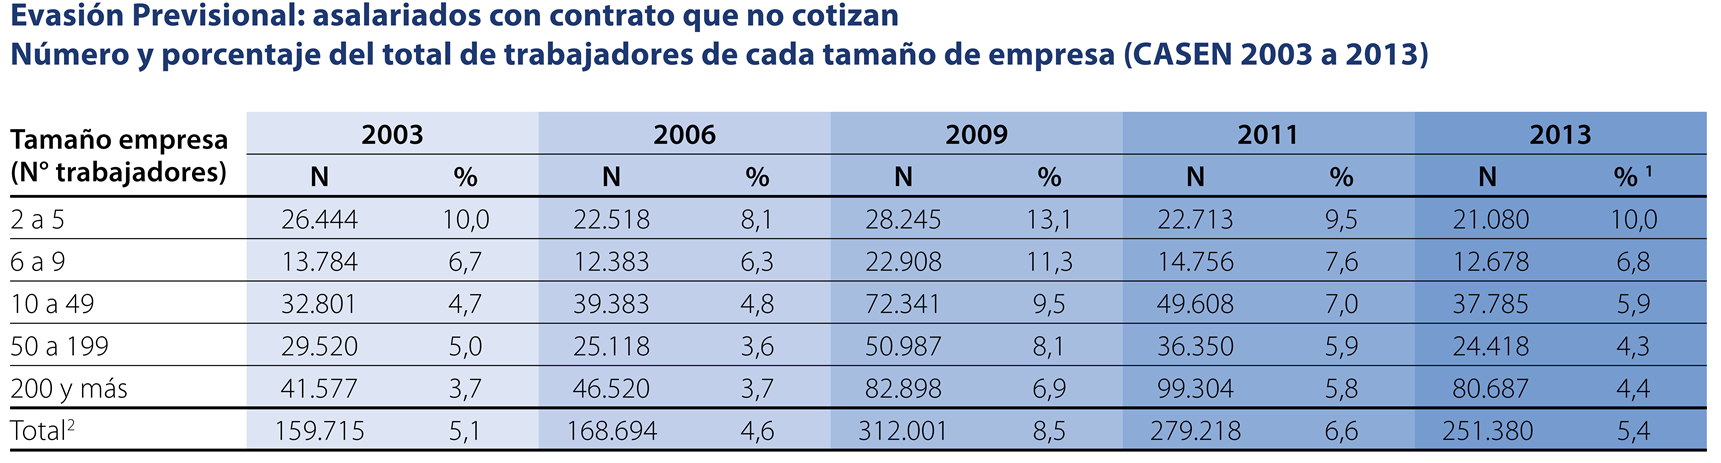 La evasión previsional (CASEN, 2003 a 2013) Fuente: Deuda